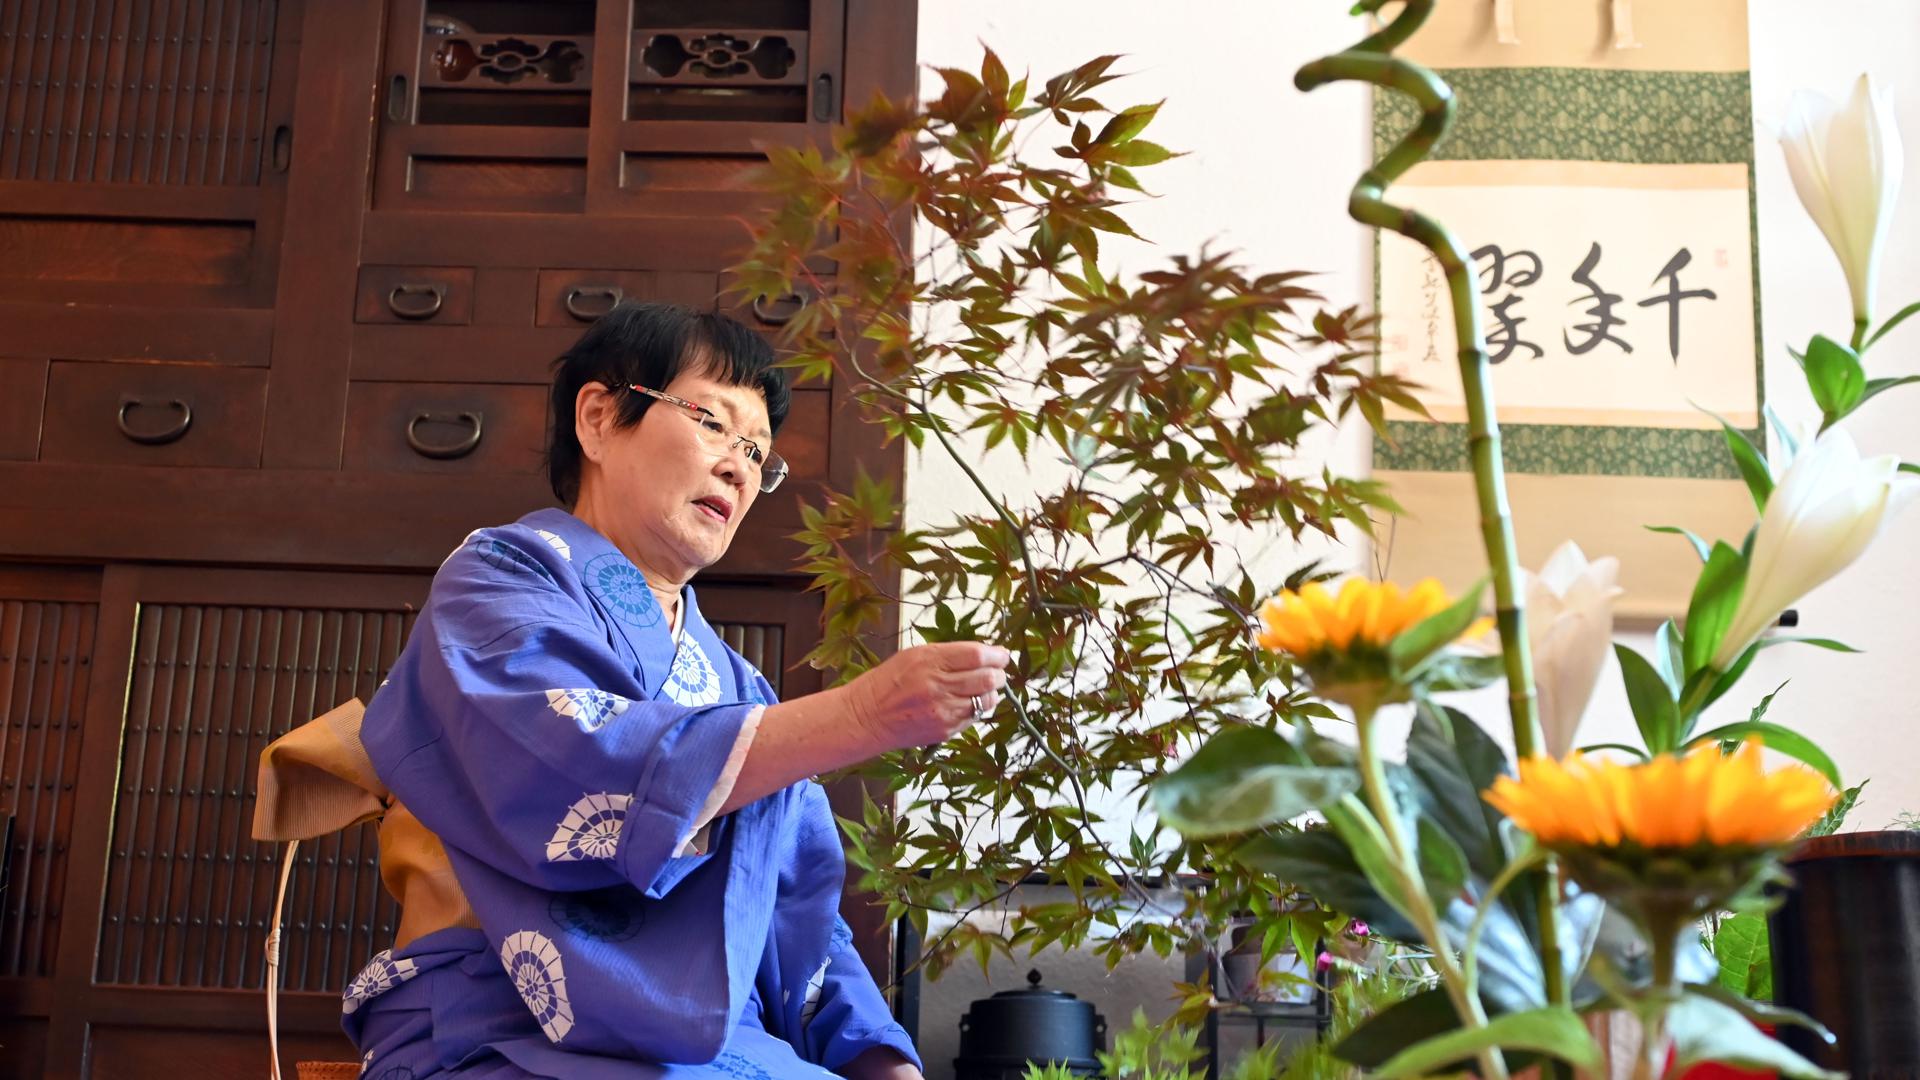 Frau Teruko Matsushima-Fritz zeigt  ikebana / kado, japanische Kunst des Blumensteckens.